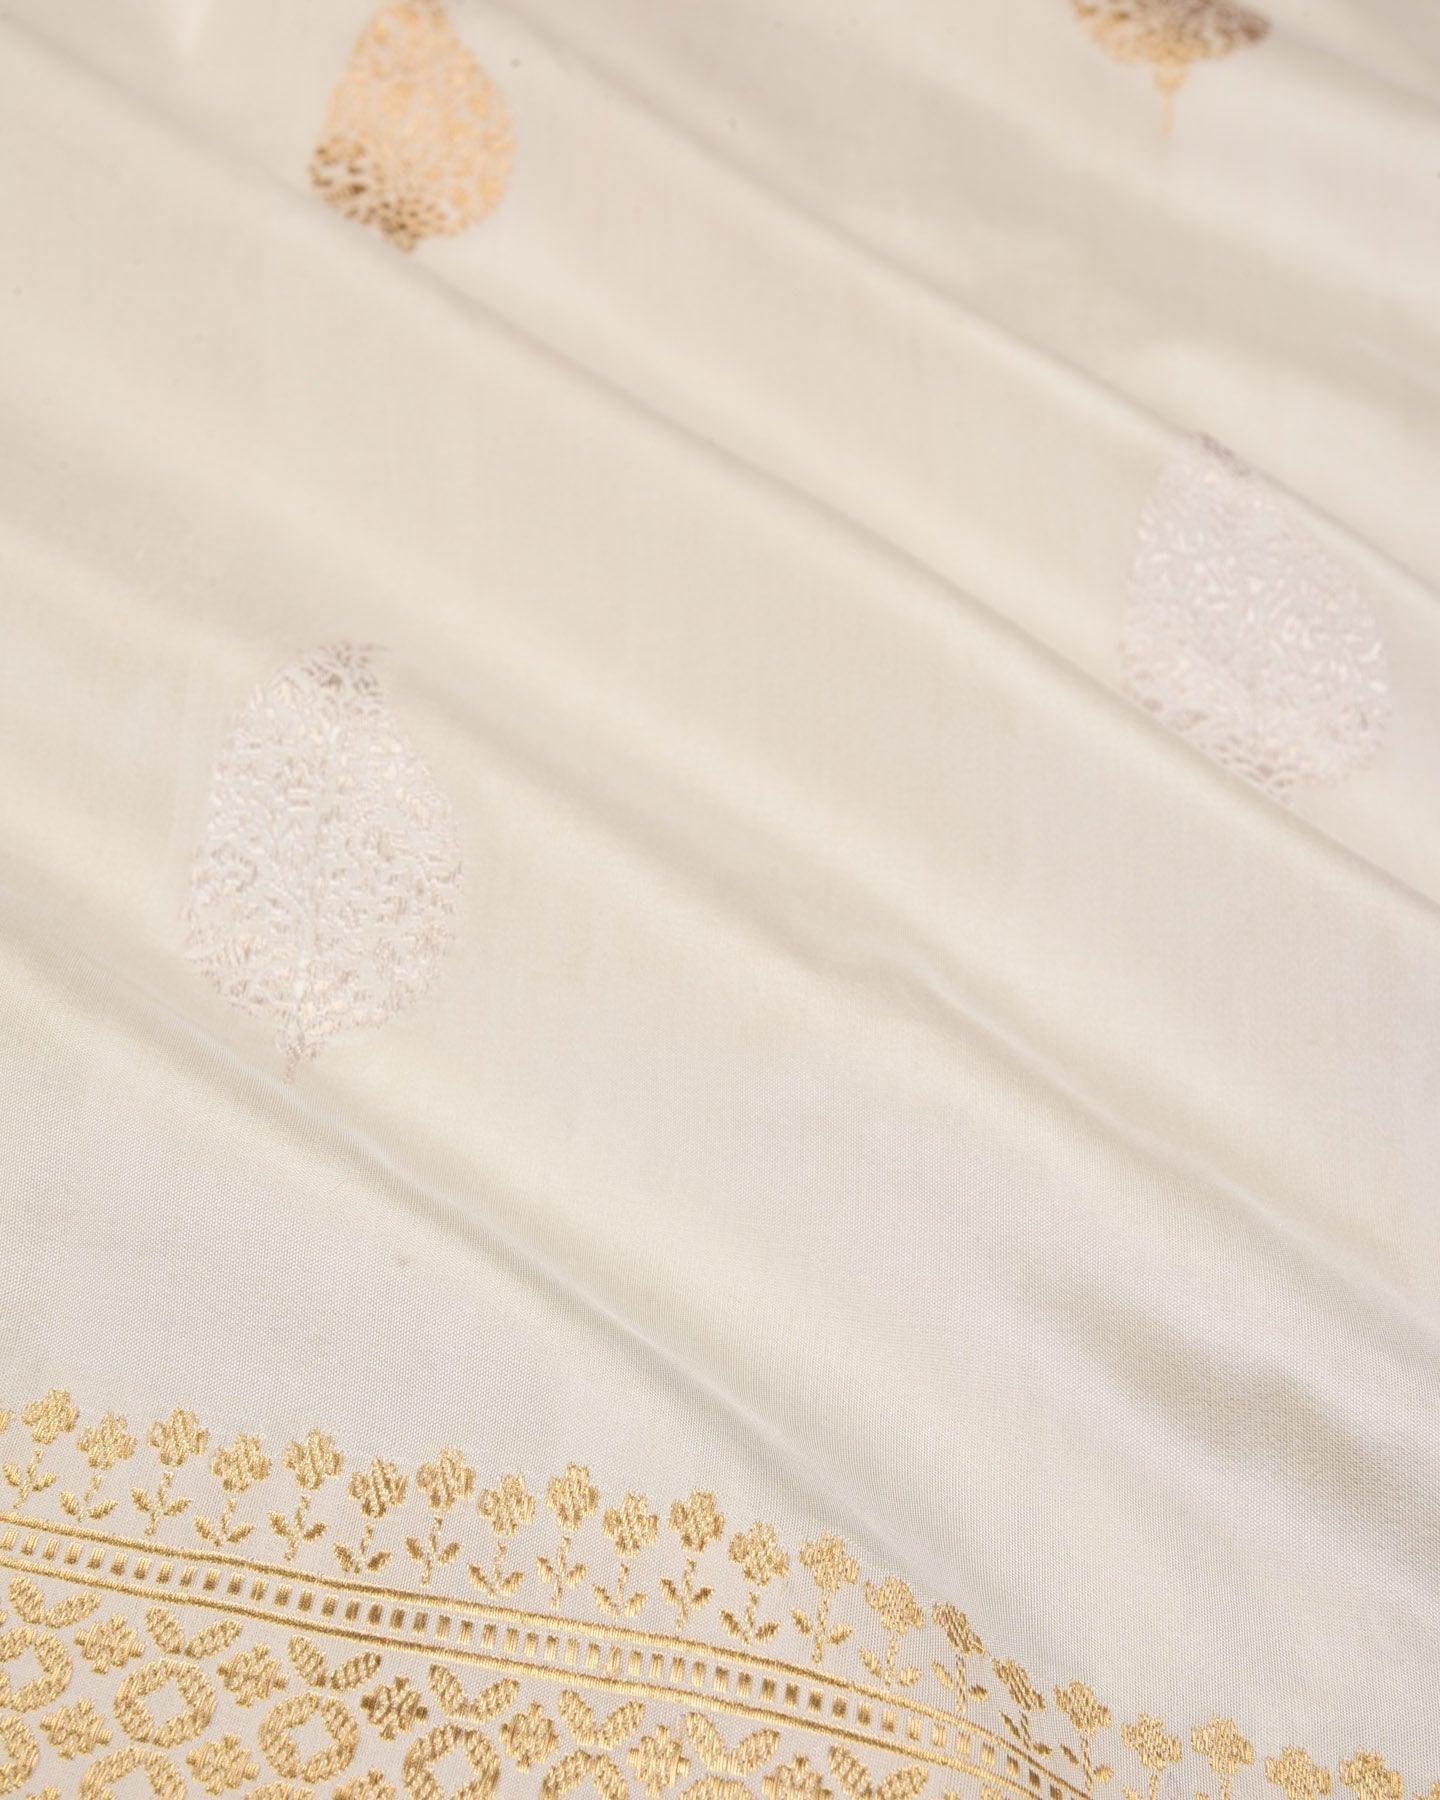 White Banarasi Gold & Silver Leaf Buta Kadhuan Brocade Handwoven Katan Silk Saree - By HolyWeaves, Benares